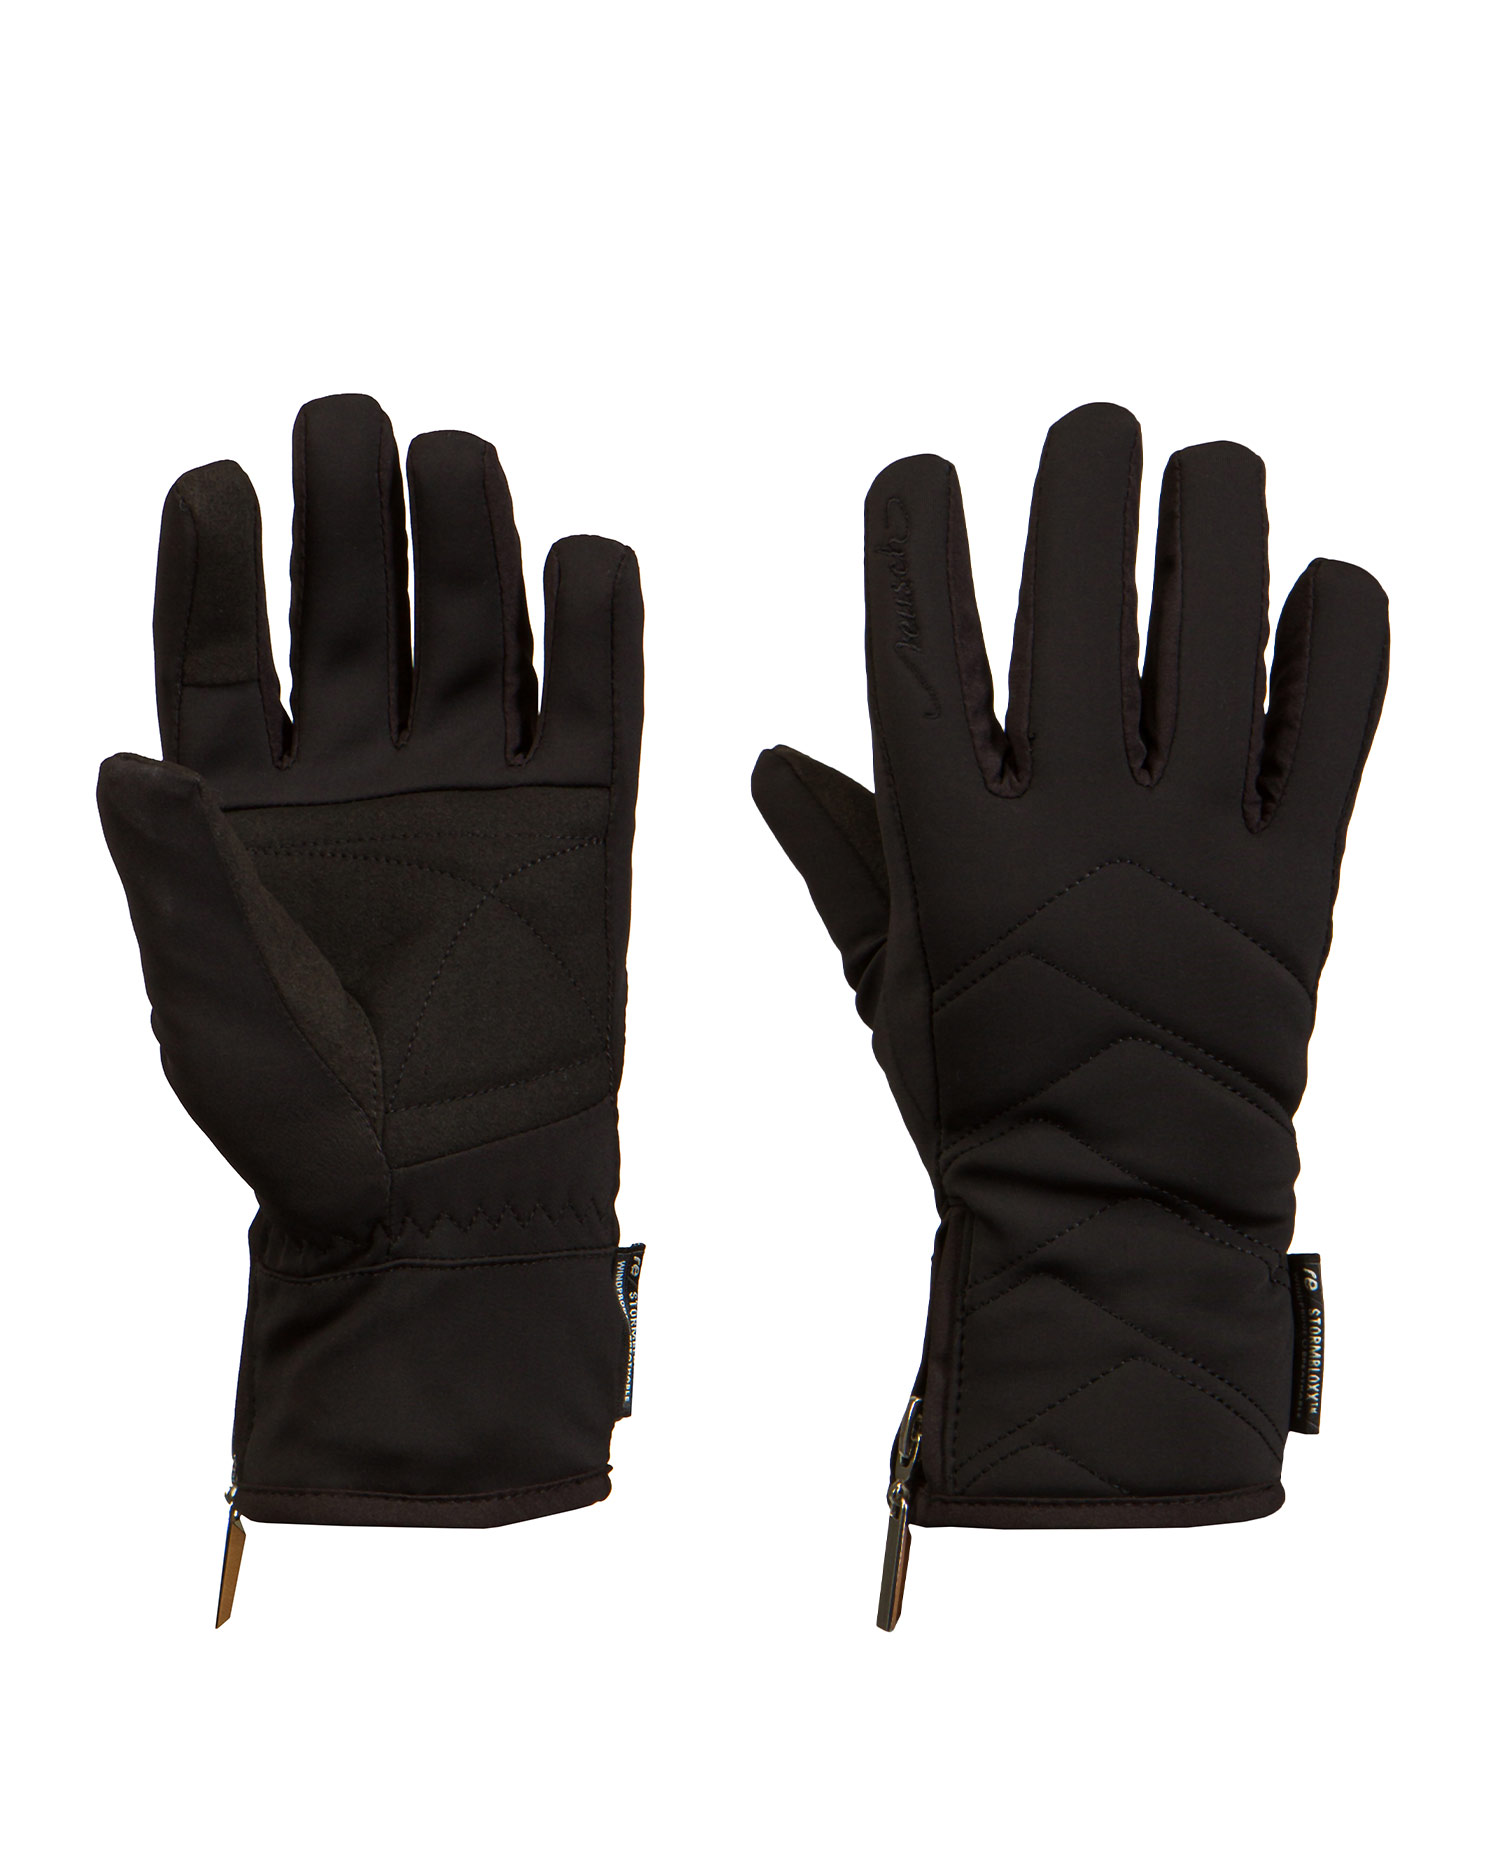 REUSCH Loredana Touch-Tec™ gloves 4935198-7700black | S'portofino